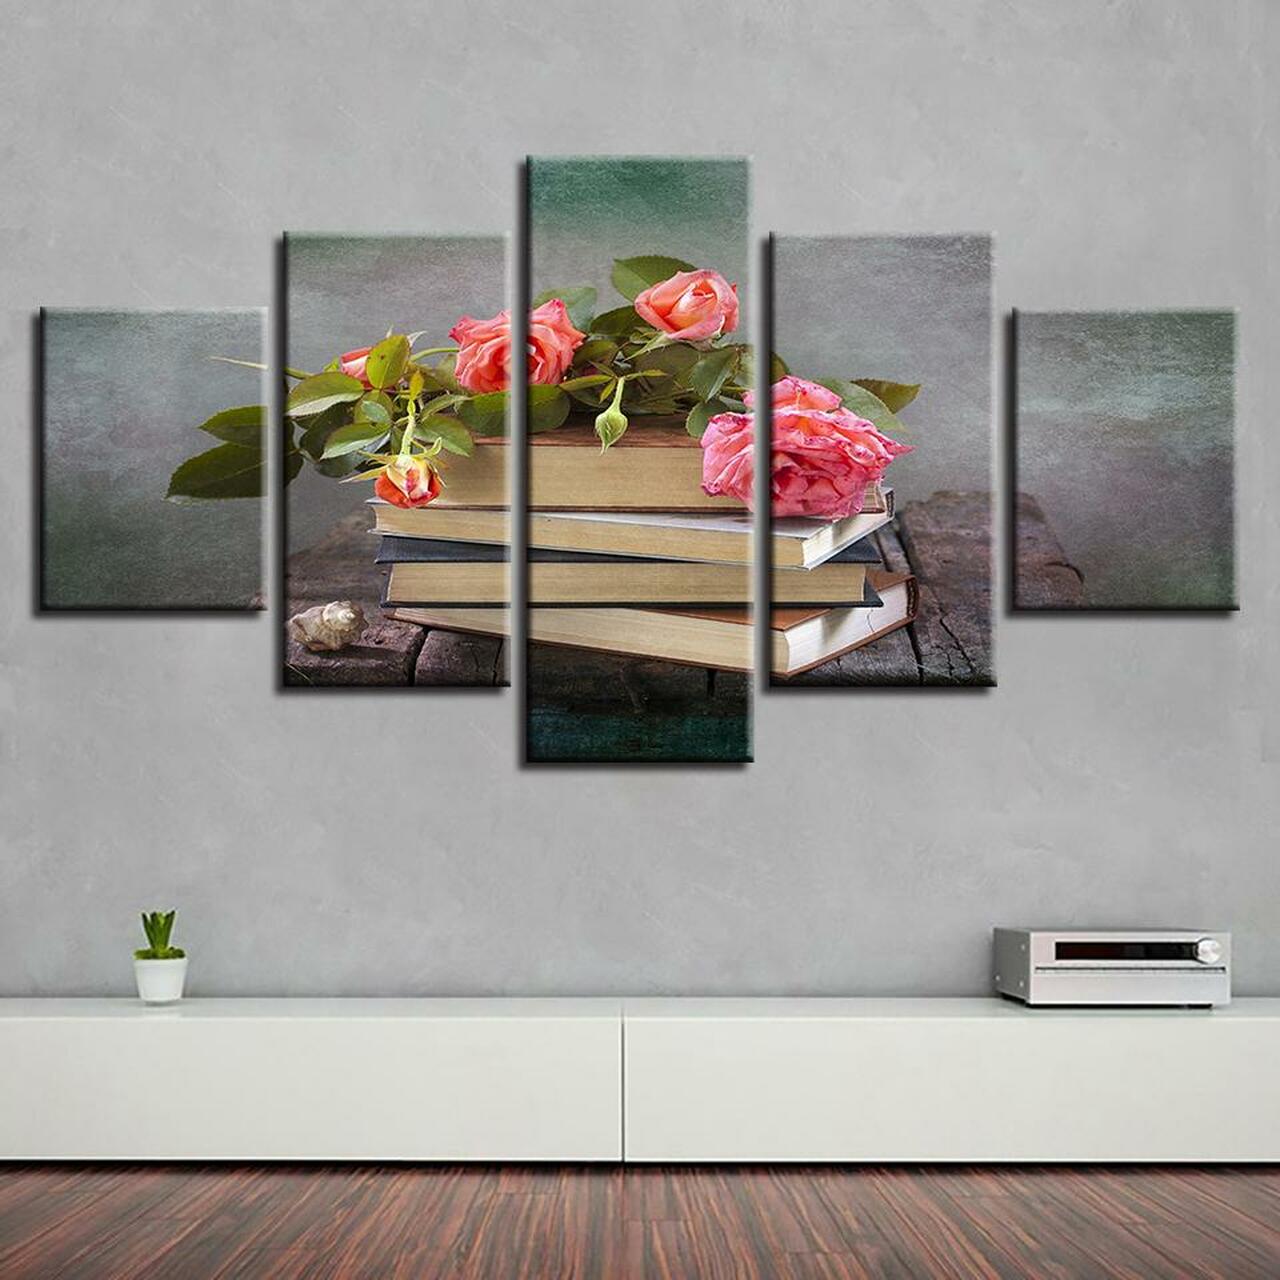 books and pink roses 5 pices peinture sur toile impression sur toile toile art pour la dcoration intrieureauvvs